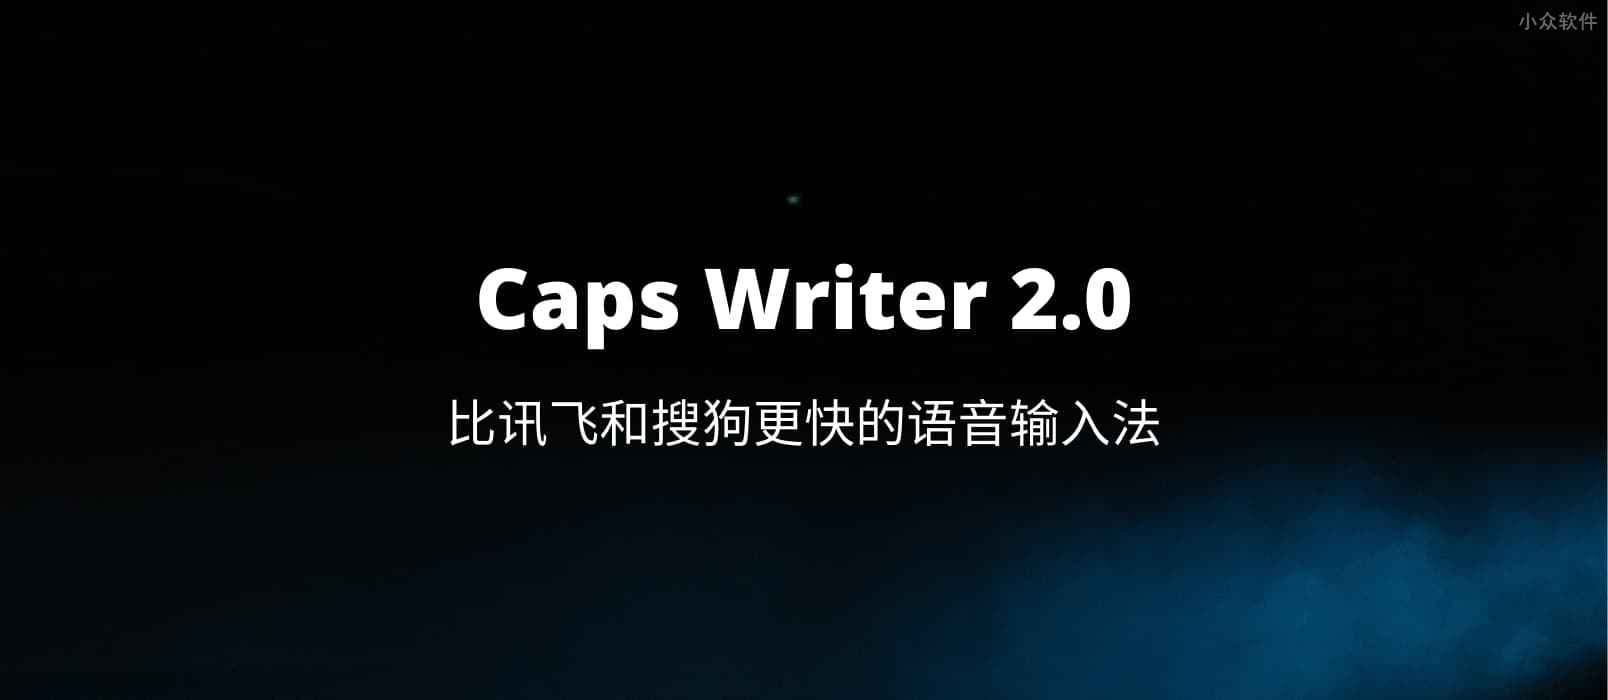 Caps Writer 2.0 – 比讯飞和搜狗更快的语音输入法[Win]